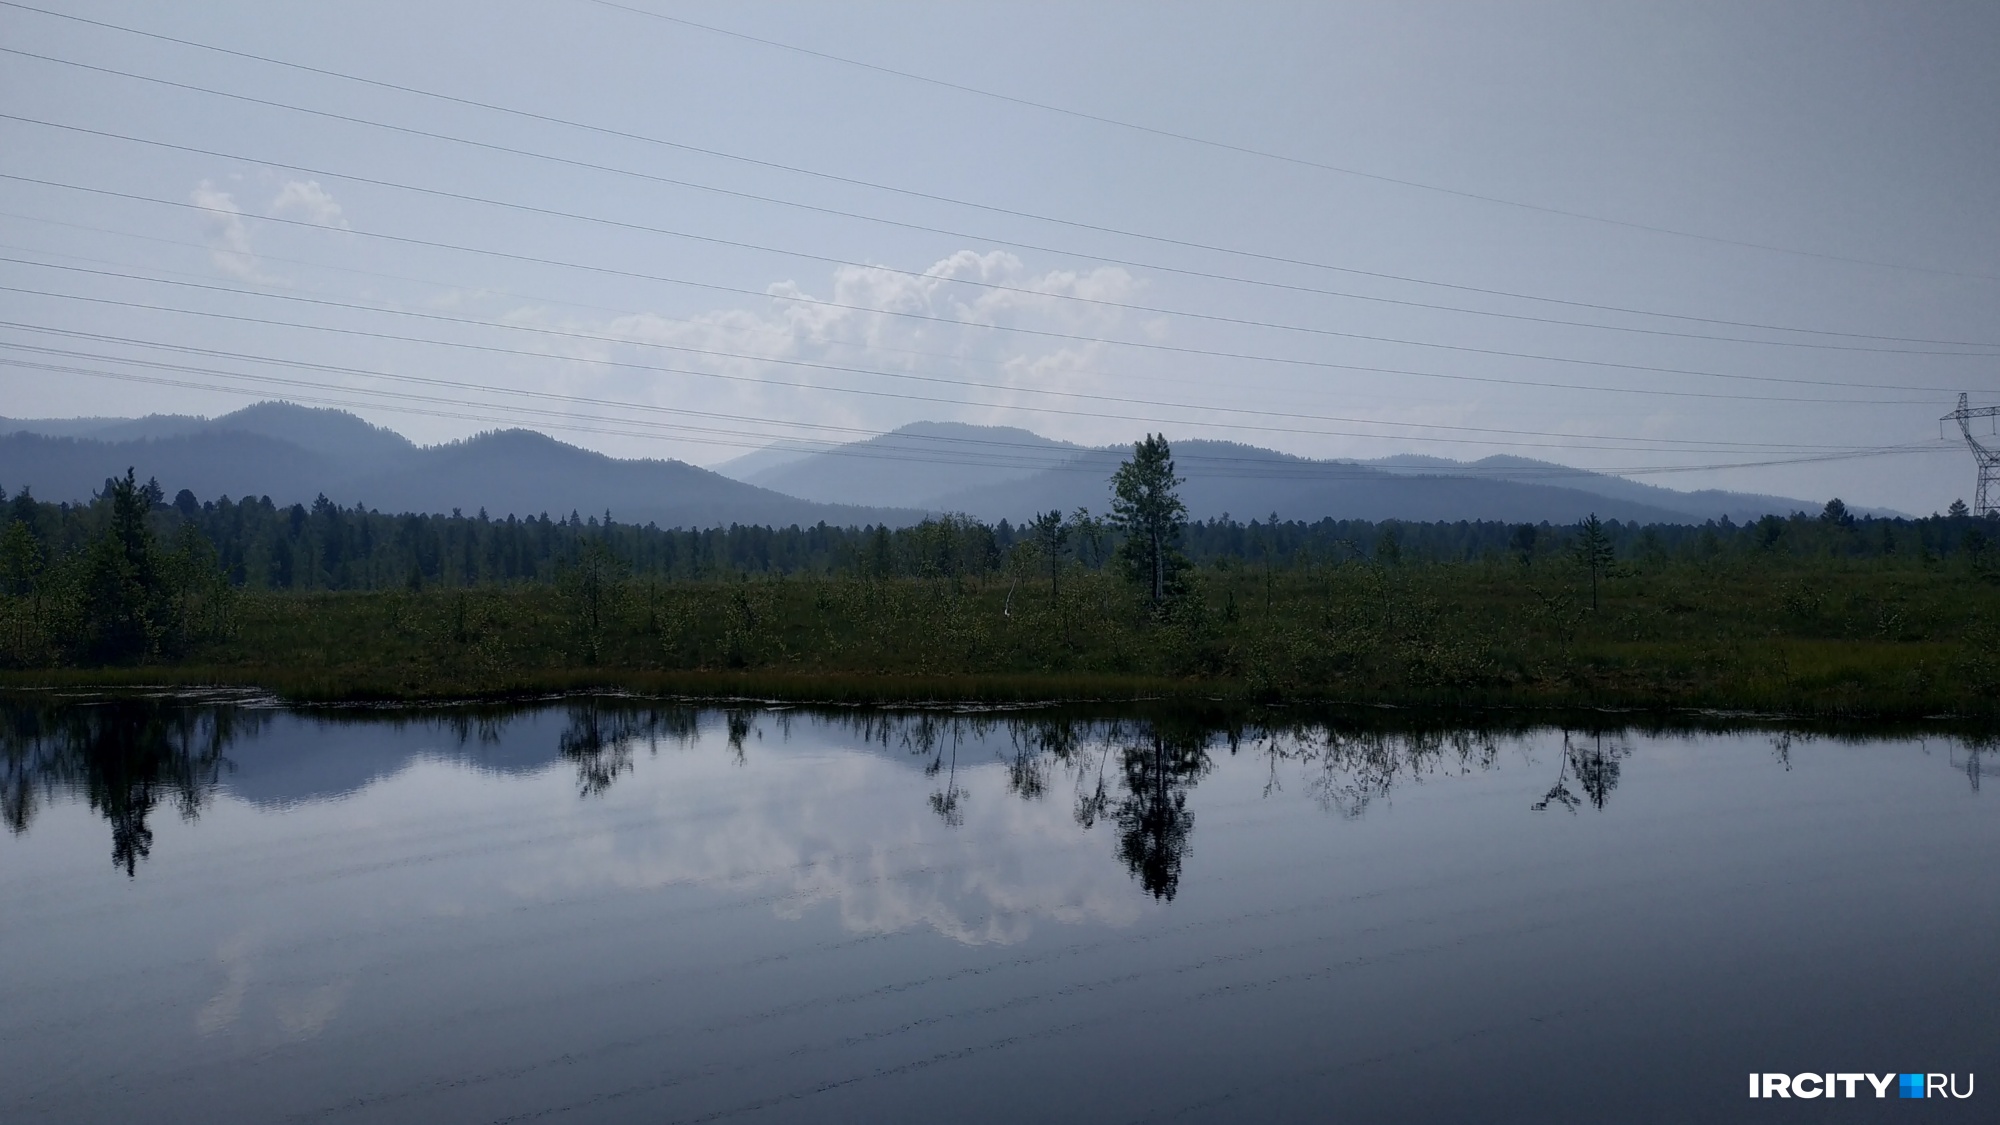 Сплошные вырубки поврежденного леса собираются разрешить на Байкале